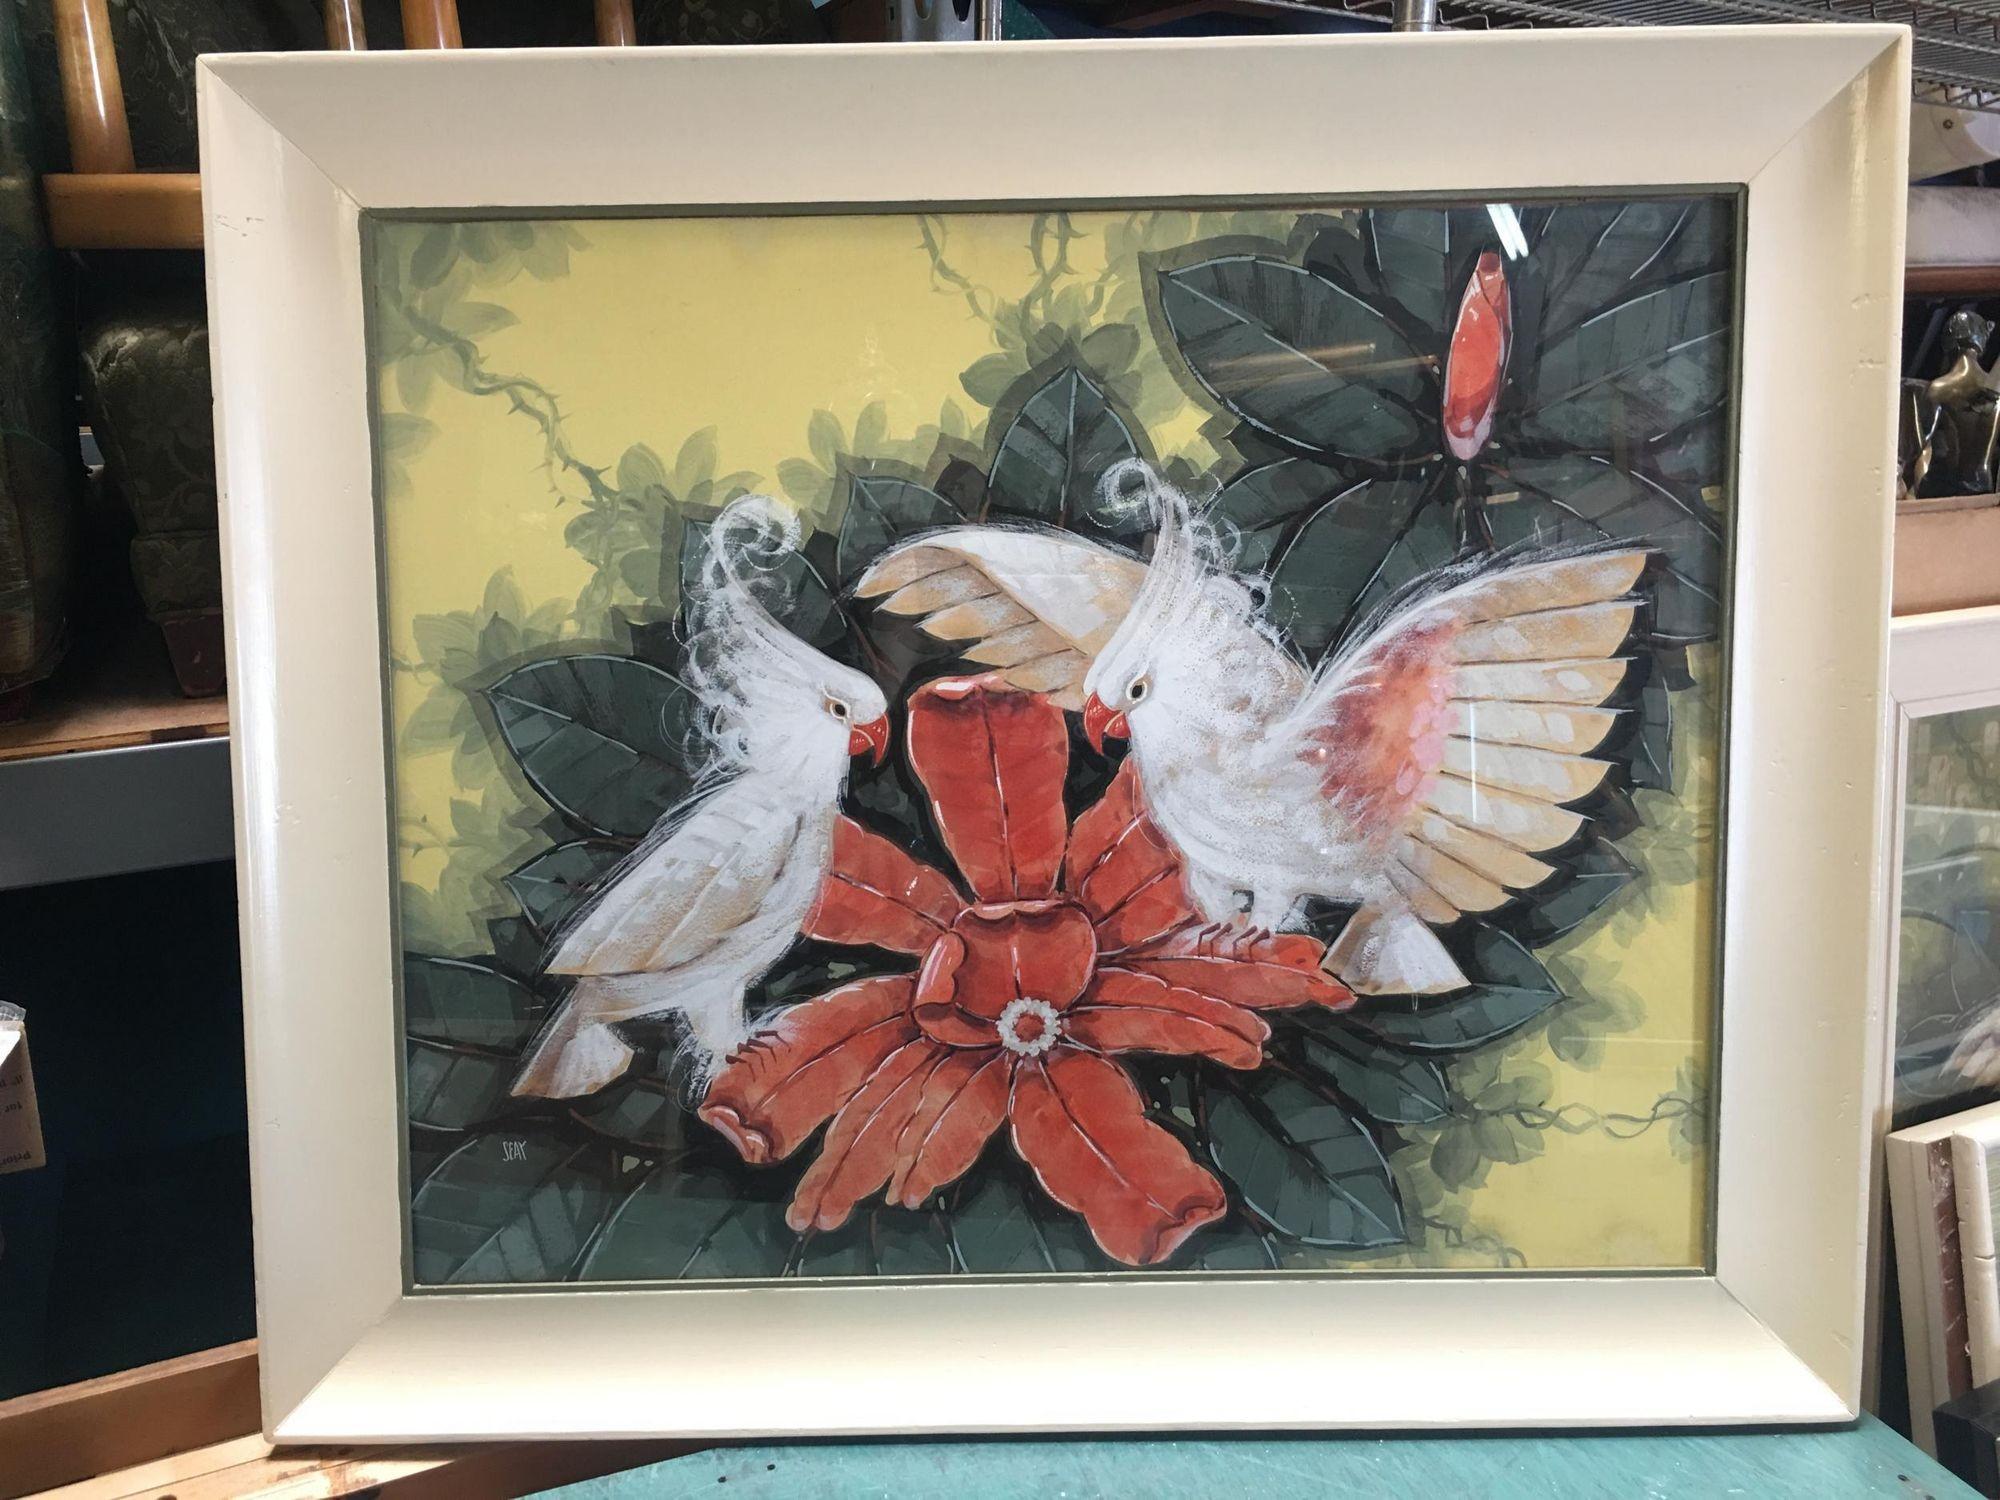 Œuvre d'art de Billy Seay intitulée Parrot Lovers (original peint à l'aérographe sur une gravure) pour la société Turner, vers 1948, dans le cadre original peint en blanc. Il s'agit d'un excellent exemple du boom de l'art et de la décoration